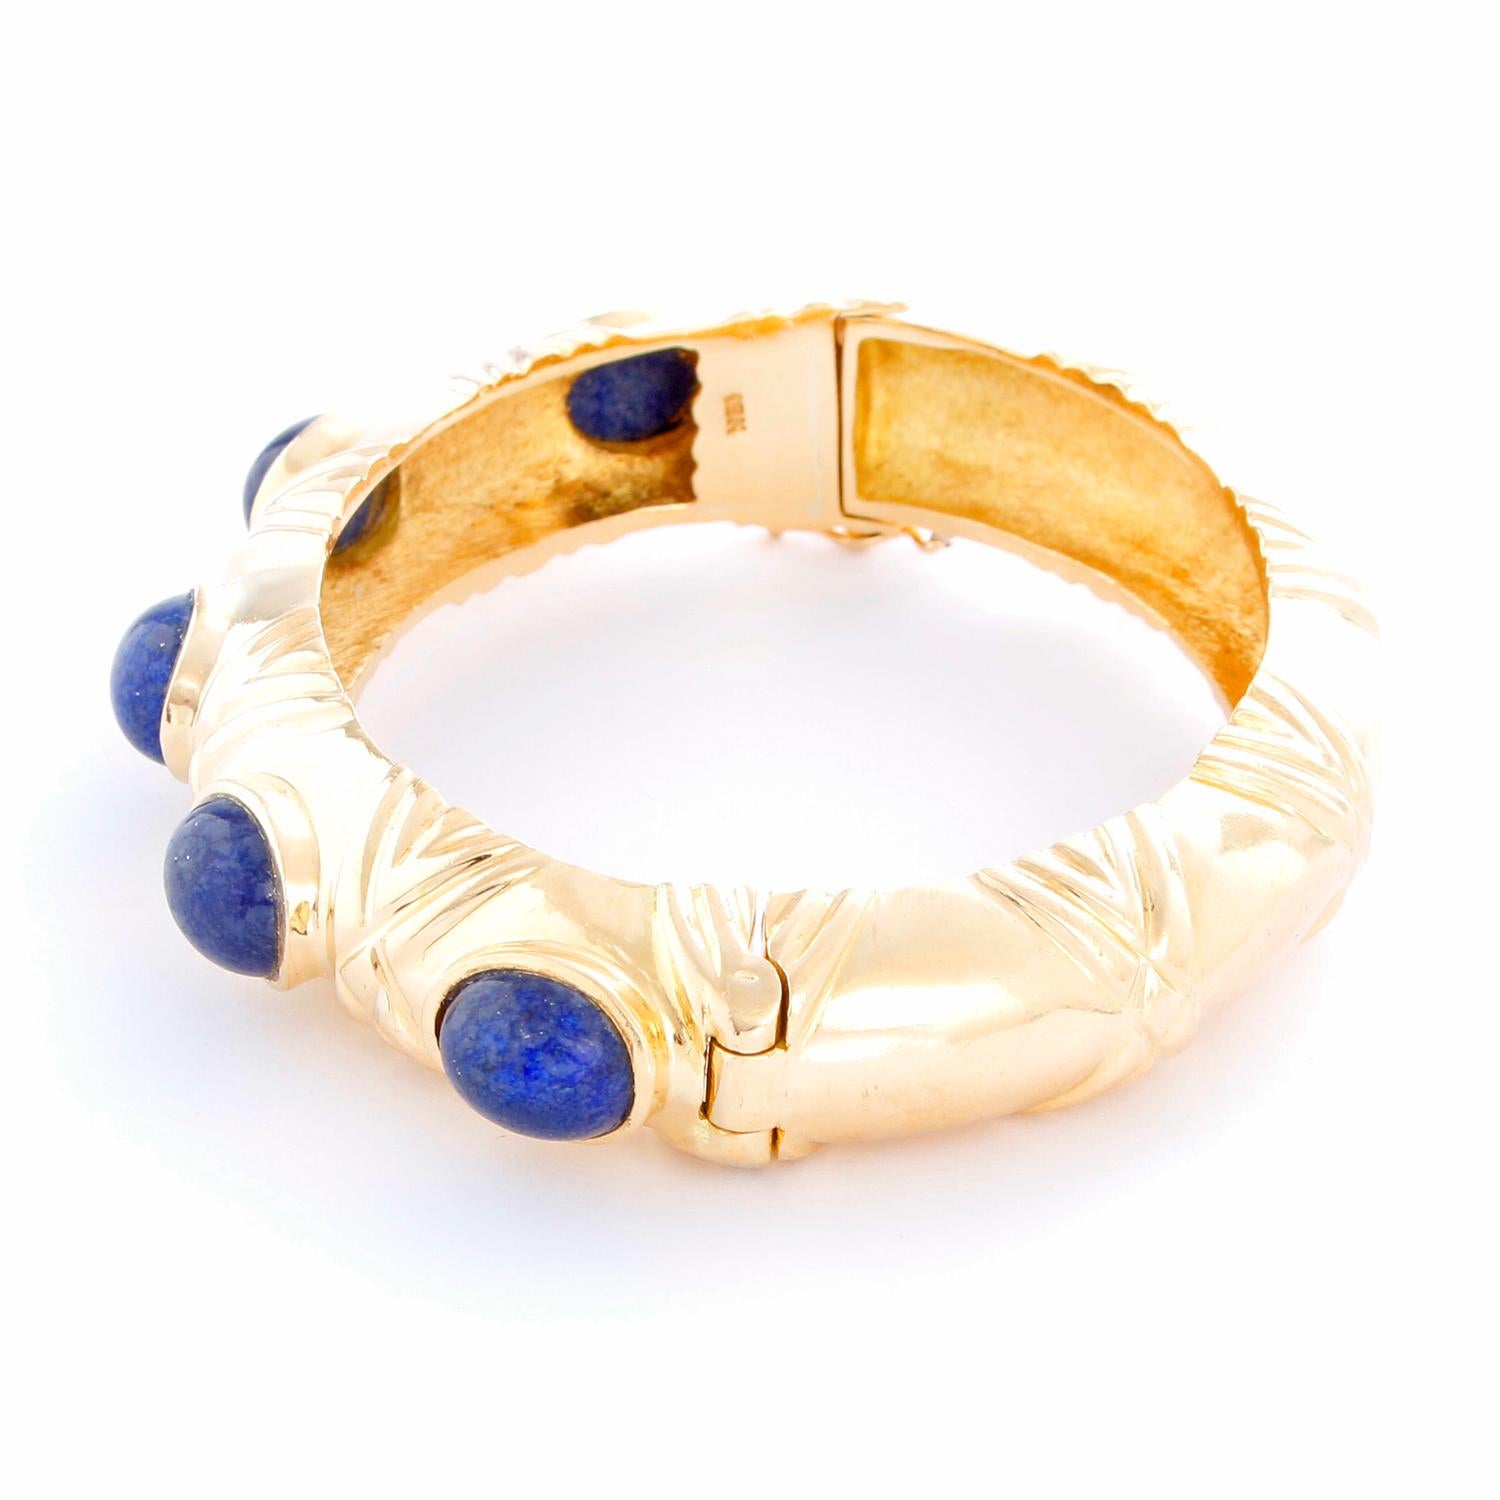 Bracelet classique en or jaune 18 carats Lapis Lazuli - Bracelet de forme ovale en or jaune 18 carats avec 5 pierres de Lapis Lazuli. S'adapte à un poignet jusqu'à 6 1/4 pouces. Poids total 63.1 grammes. Largeur totale 13 mm. D'occasion avec boîte